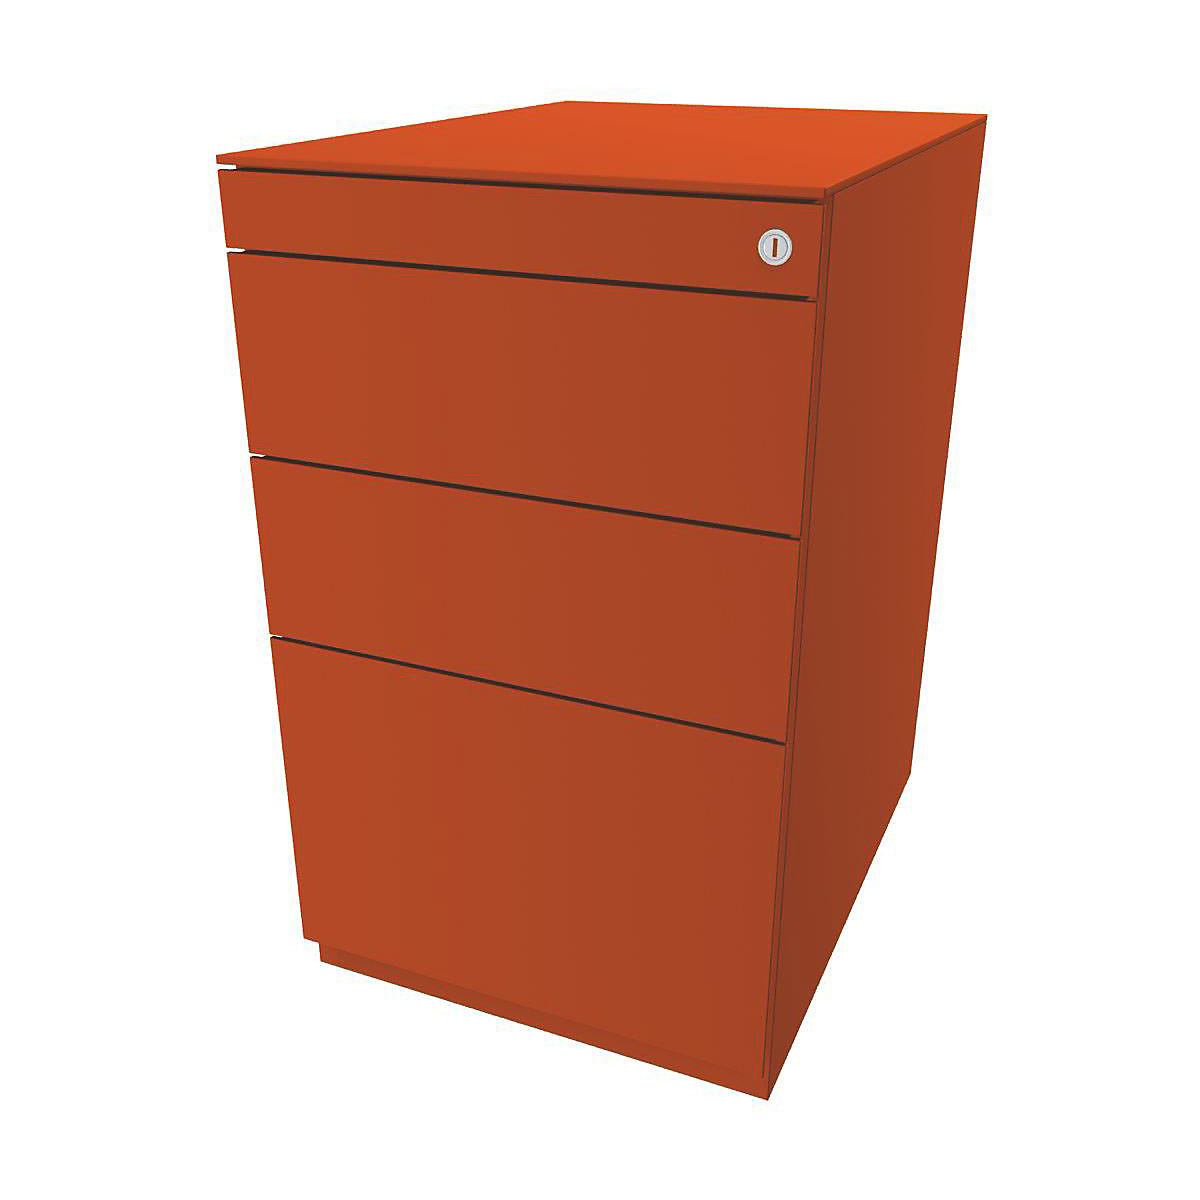 Stojaci kontajner Note™, s 2 univerzálnymi zásuvkami, 1 závesná registratúra – BISLEY, s hornou doskou 565 mm, oranžová-2